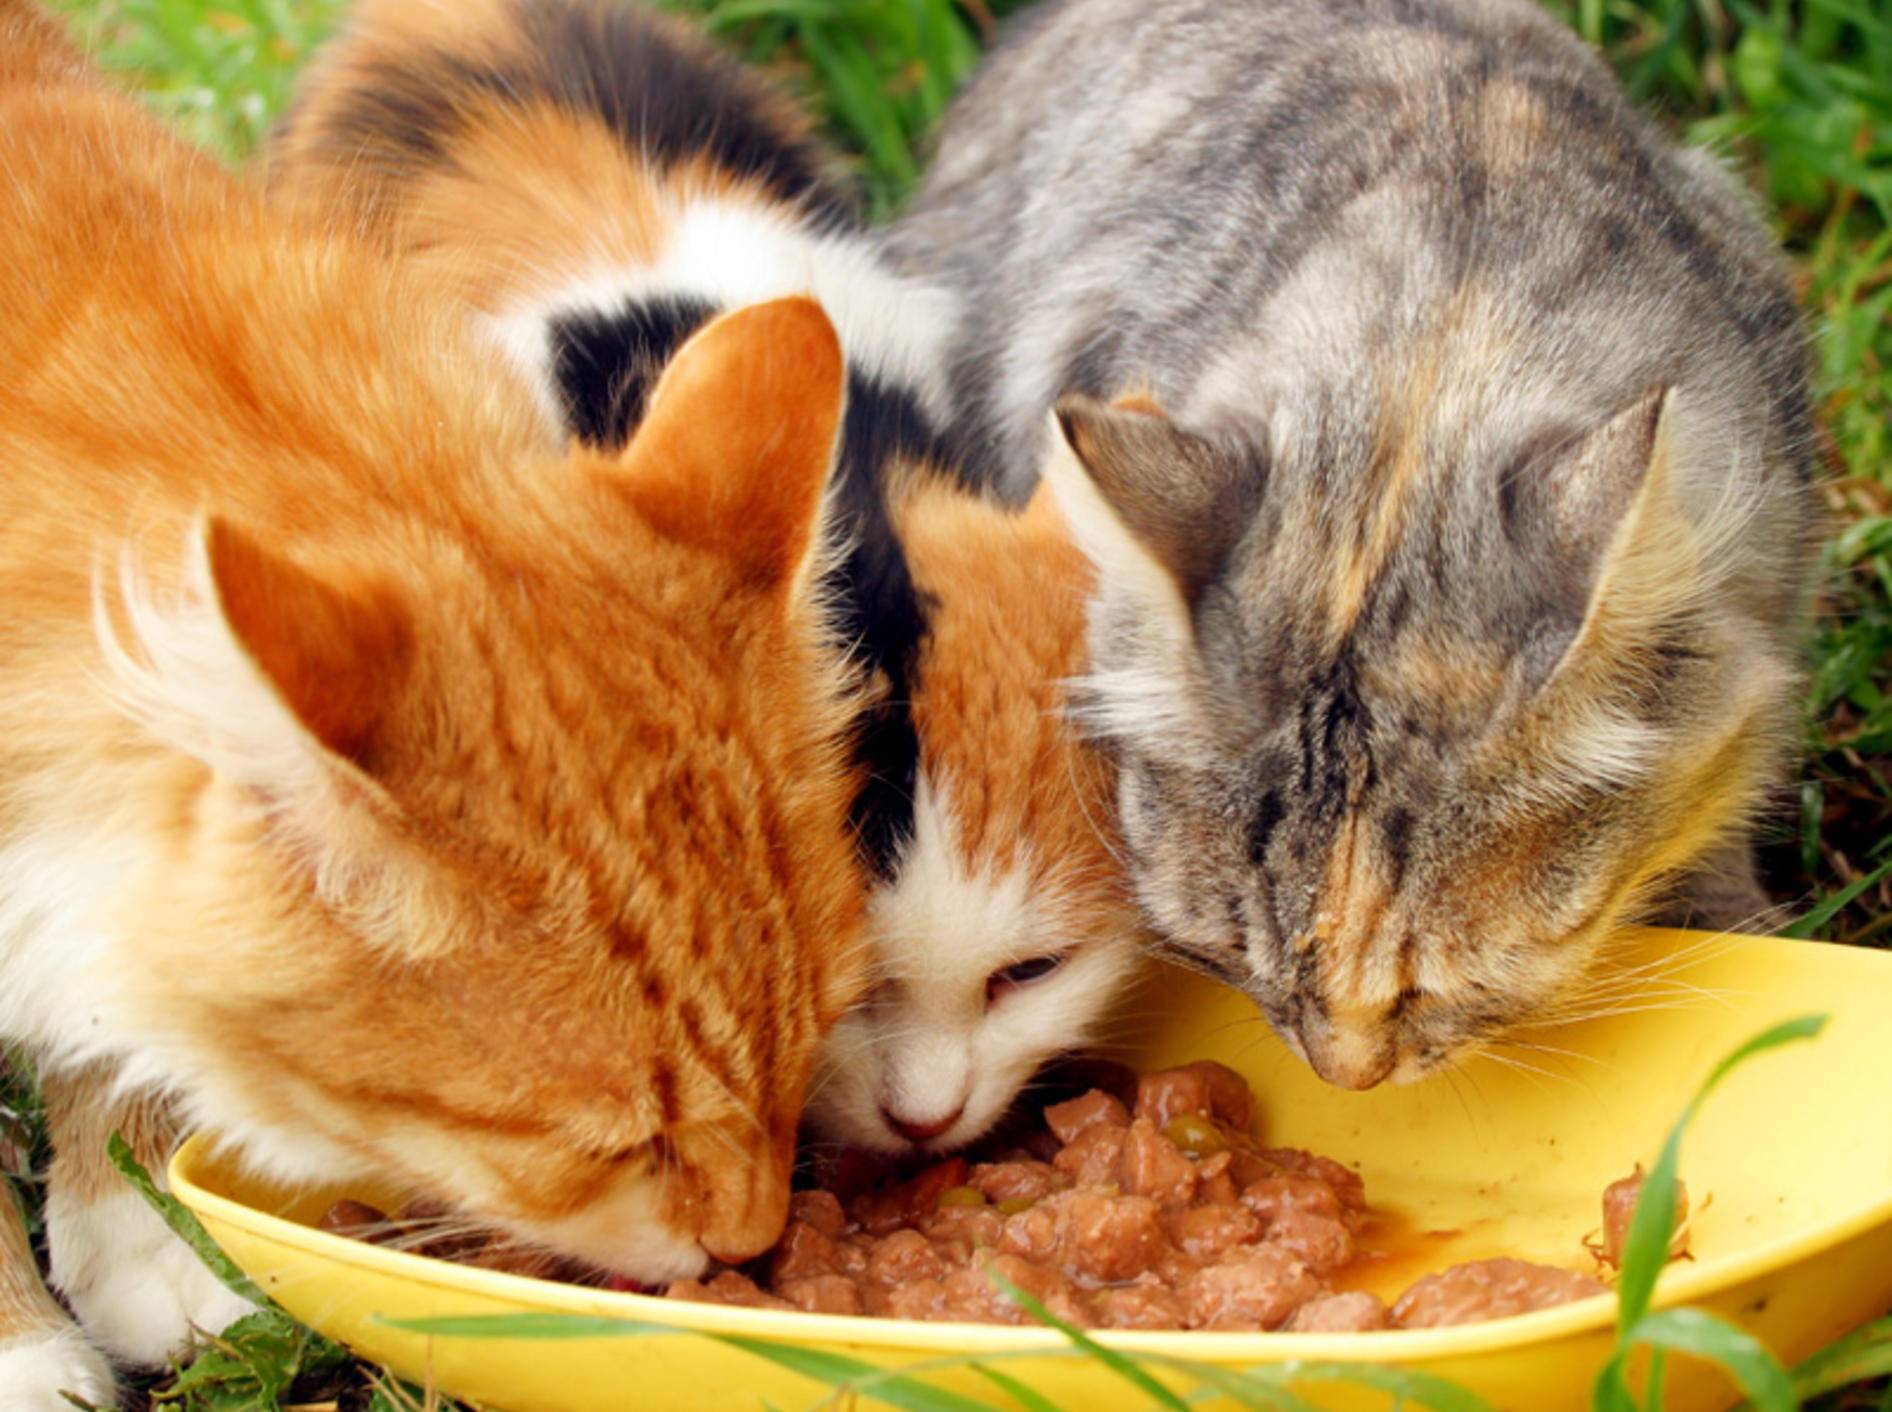 Fischrezepte eignen sich prima zum Selbermachen von Katzenfutter – Bild: Shutterstock / saiko3p